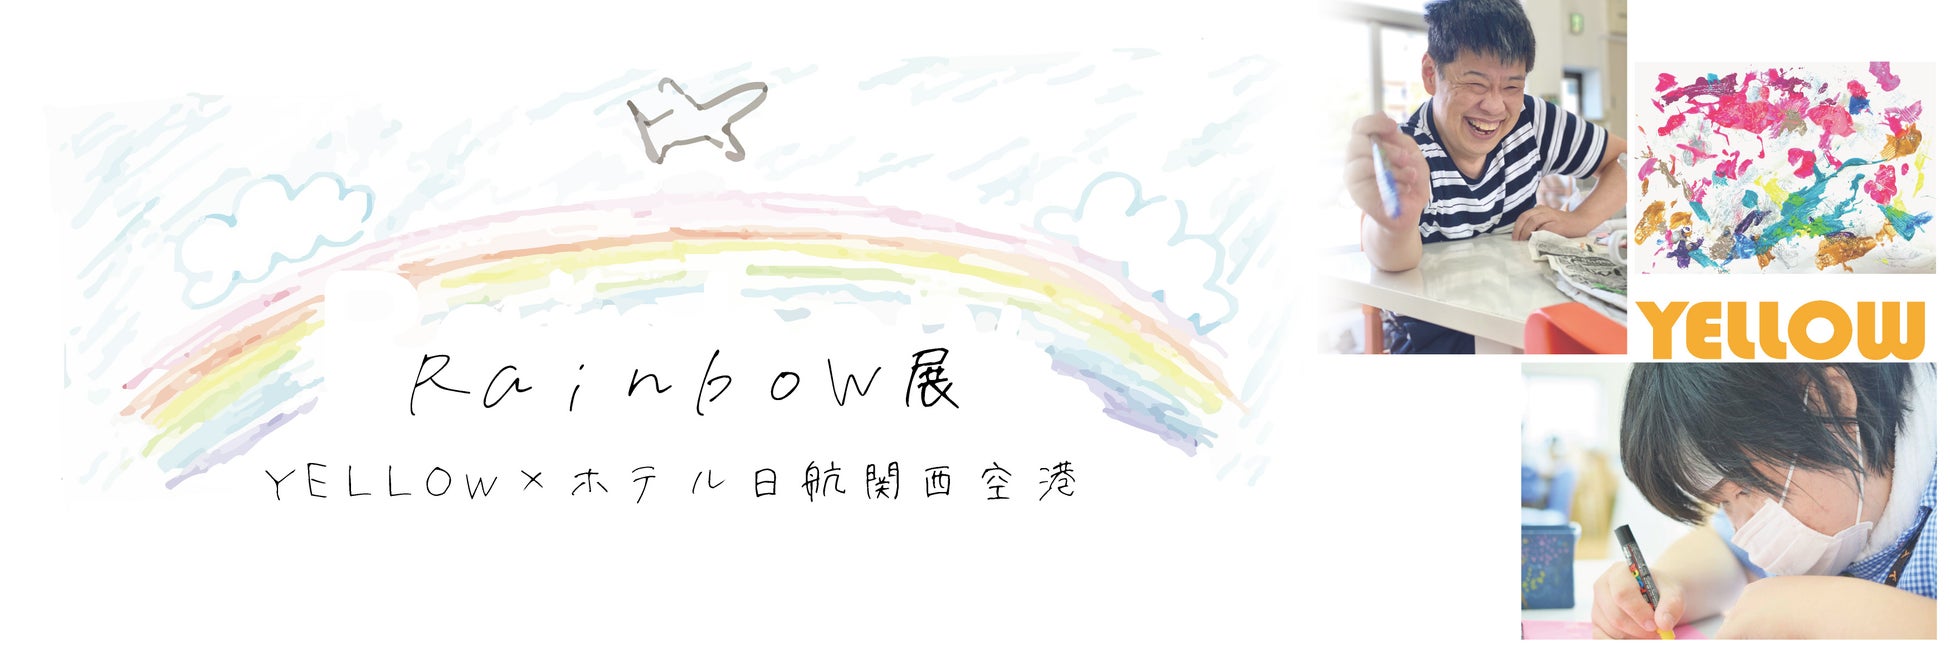 【ホテル日航関西空港】「Rainbow展 YELLOW×ホテル日航関西空港」を開催